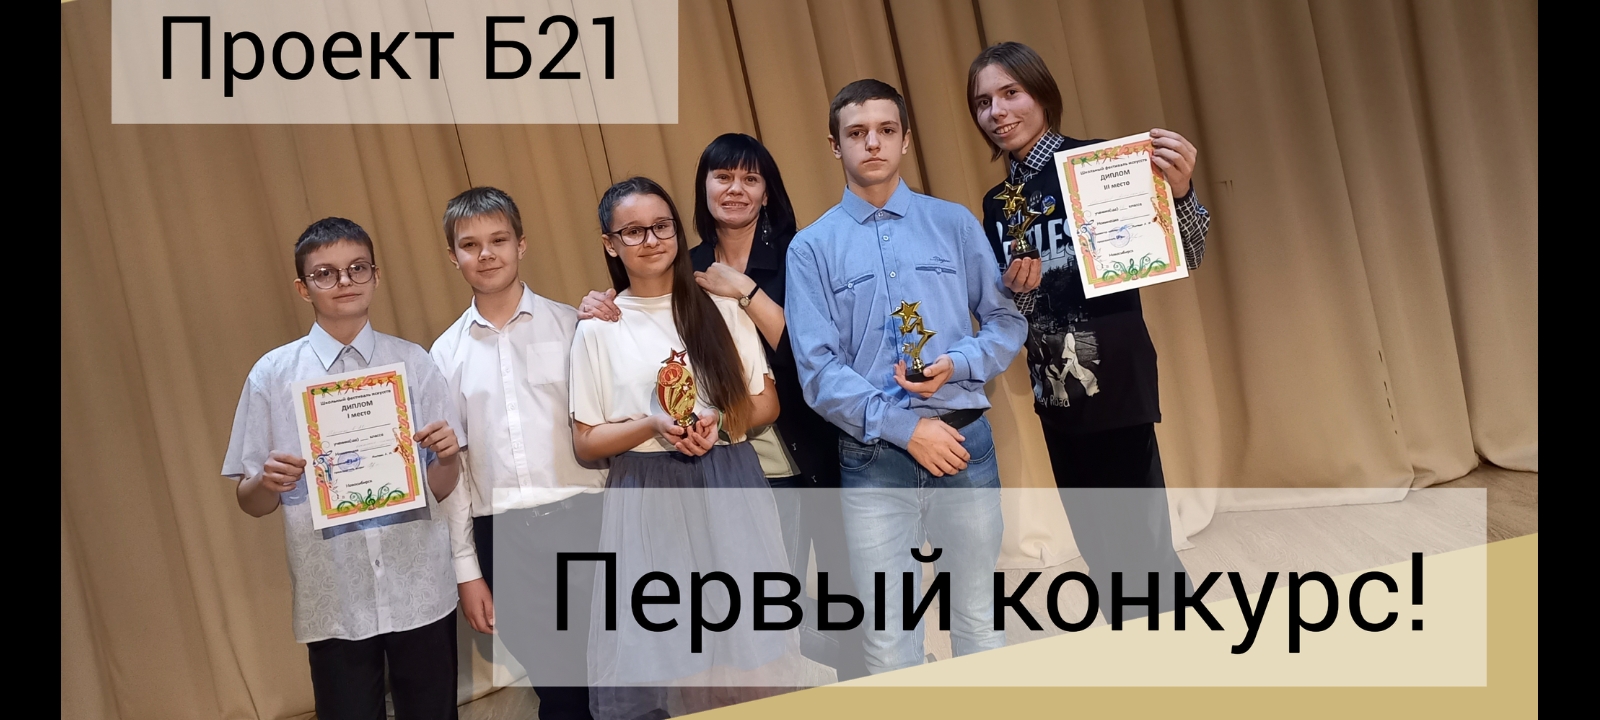 Первый конкурс! Проект Б21.  ДДК им Д. Н. Пичугина, Новосибирск, 2022.